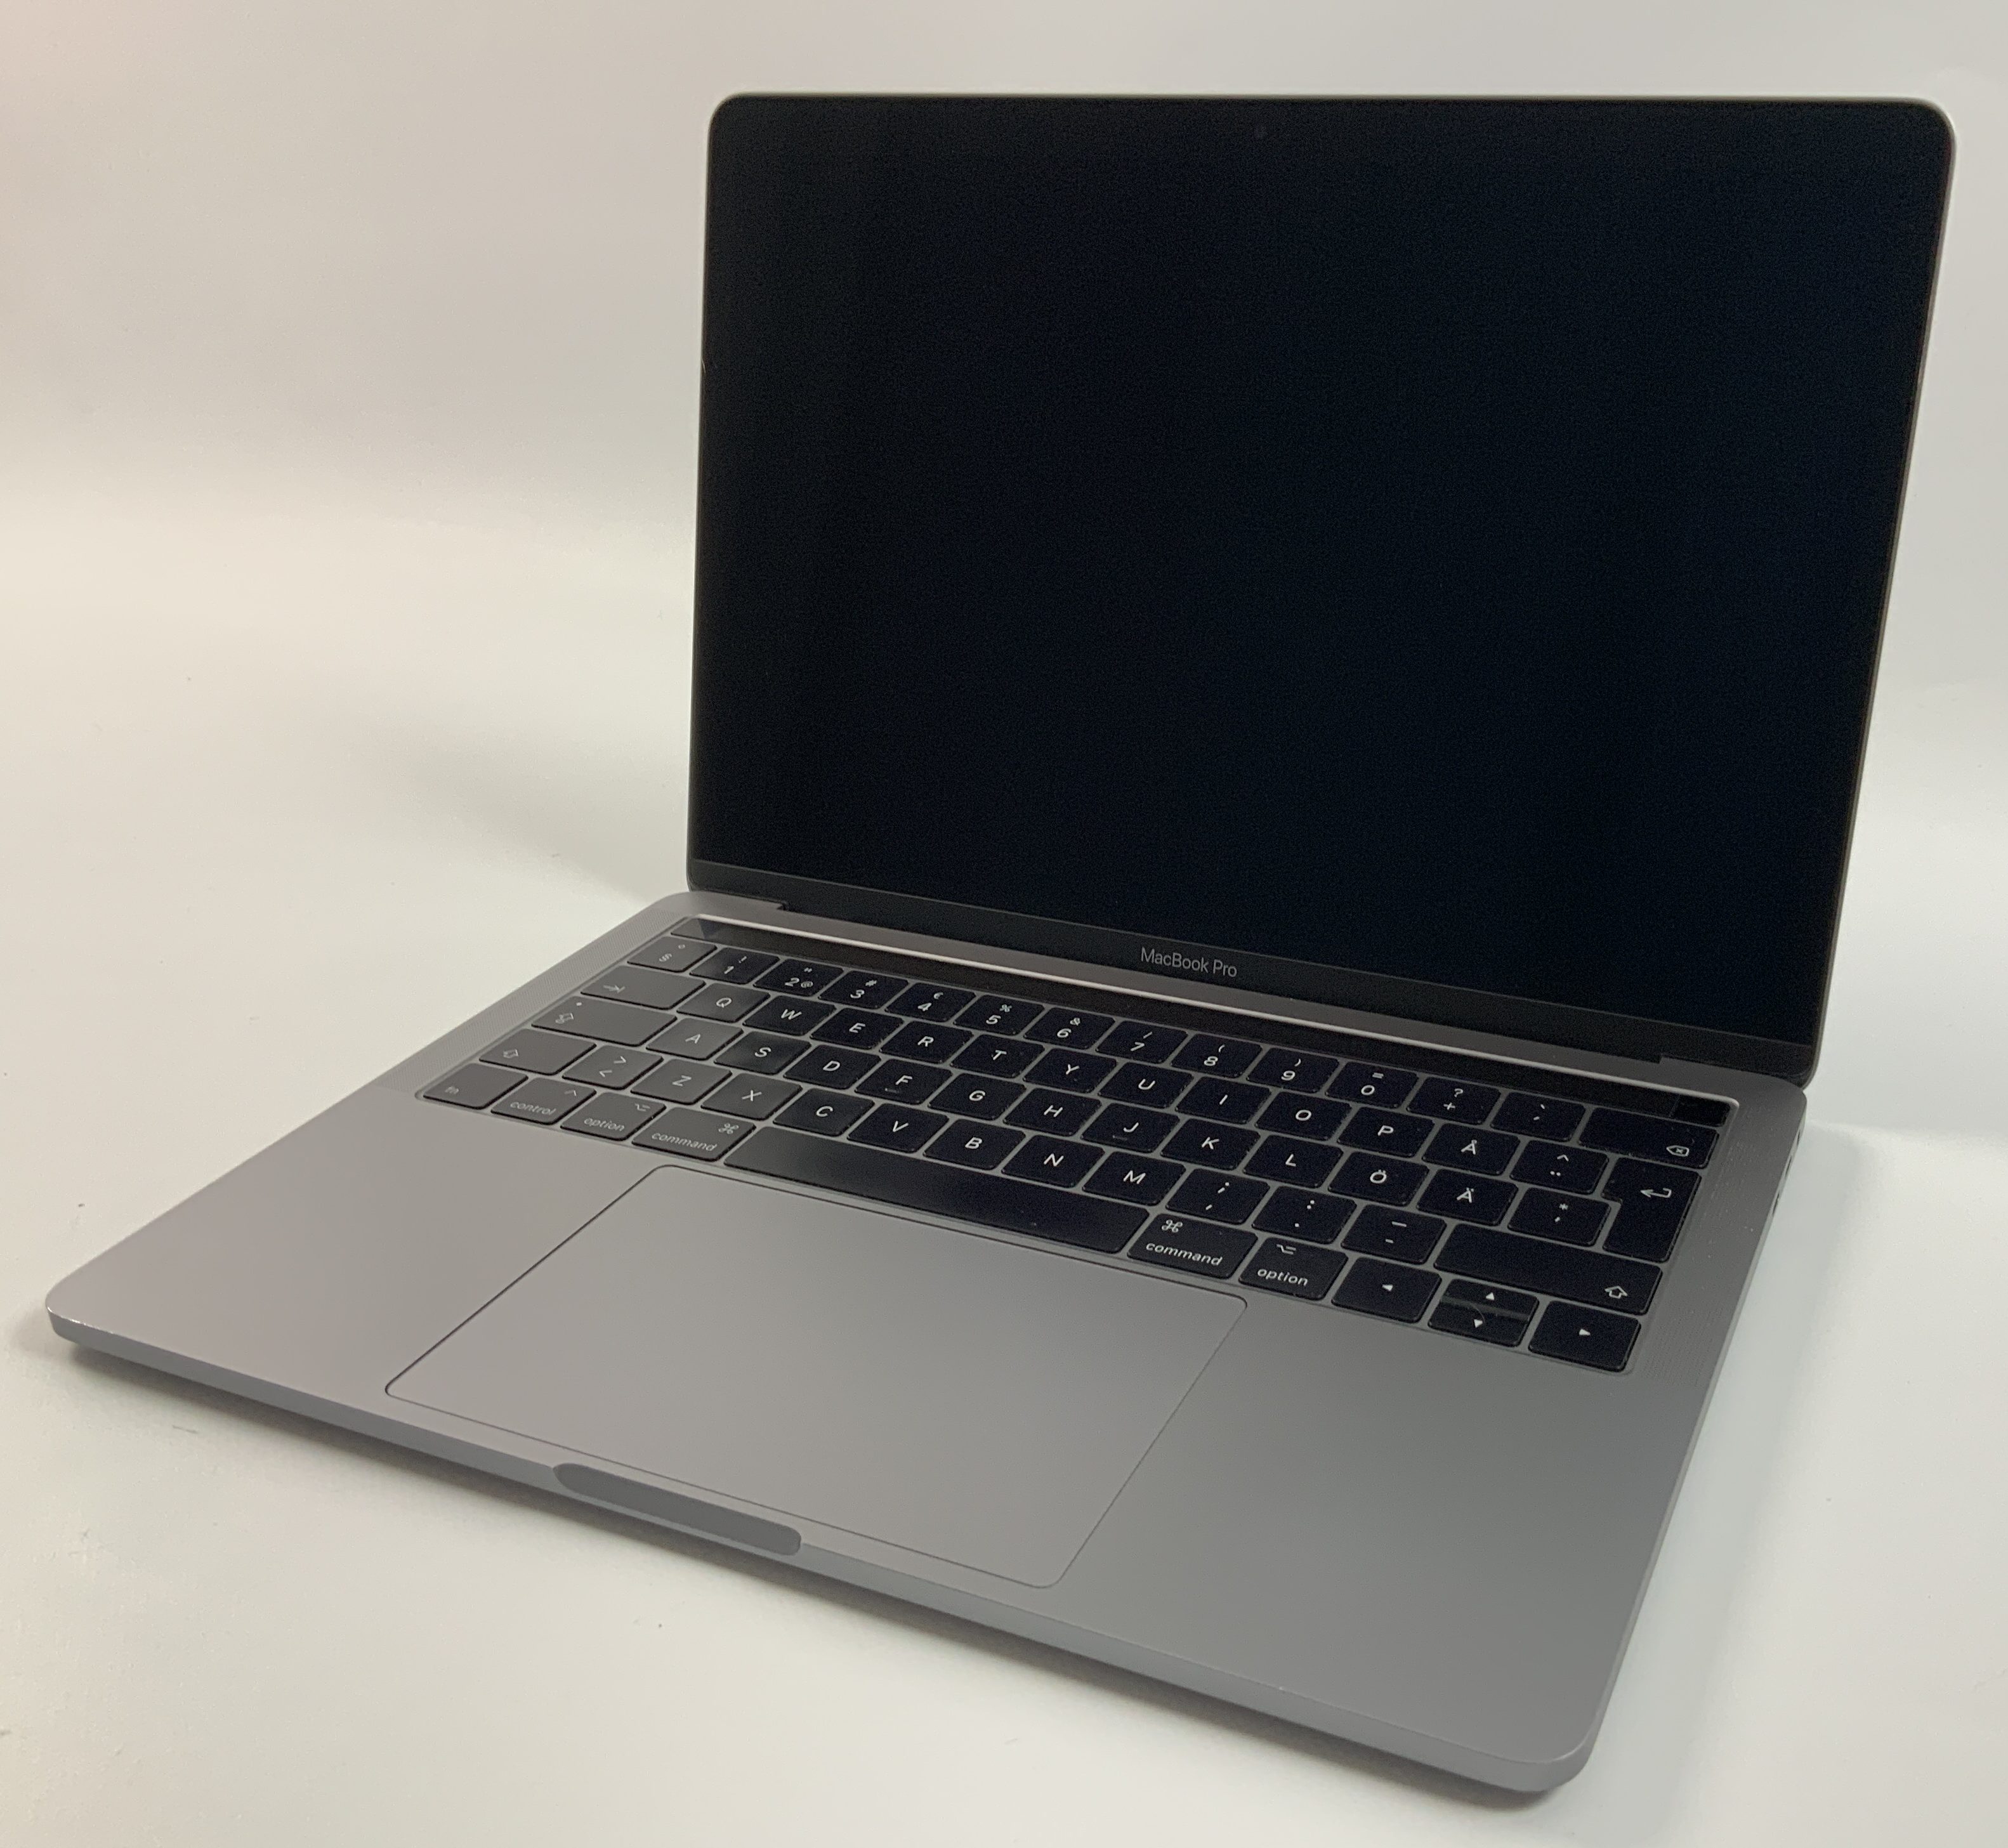 MacBook Pro 13" 4TBT Mid 2017 (Intel Core i5 3.1 GHz 8 GB RAM 256 GB SSD), Space Gray, Intel Core i5 3.1 GHz, 8 GB RAM, 256 GB SSD, Afbeelding 1